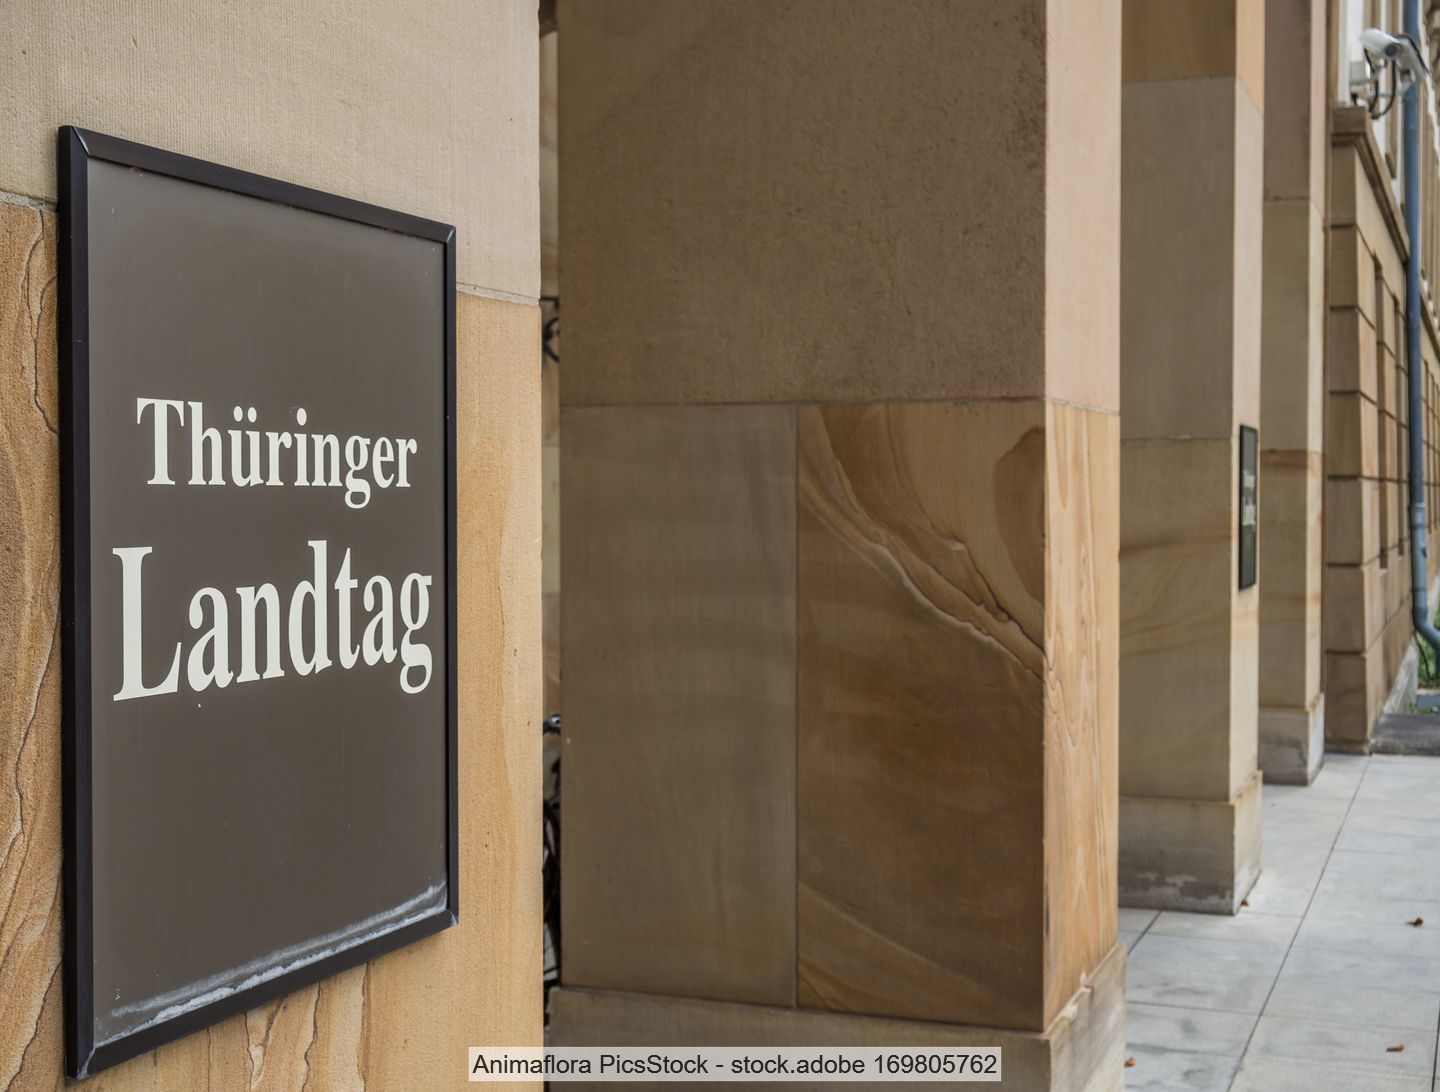 Schild mit Aufschrift "Thüringer Landtag" an Mauer im Eingangsbereich des Landtaggebäudes in Erfurt